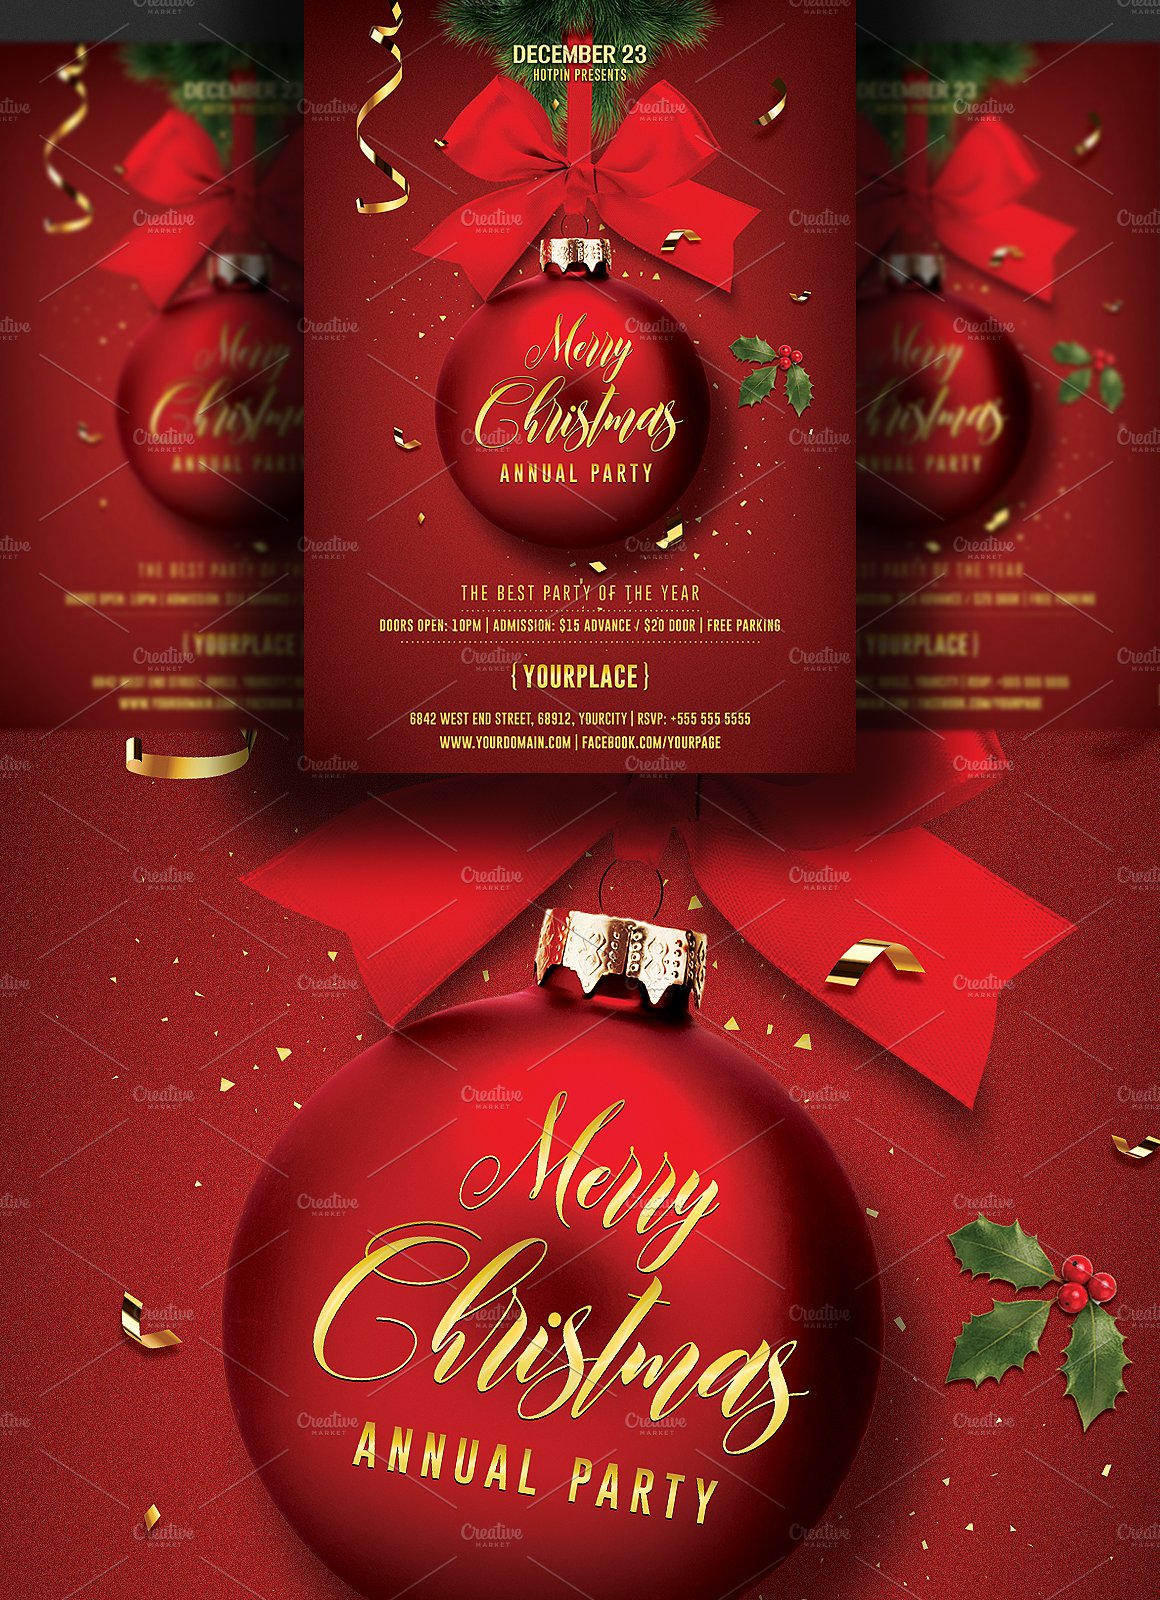 圣诞派对邀请函传单模板 Christmas Invitation Flyer Template插图